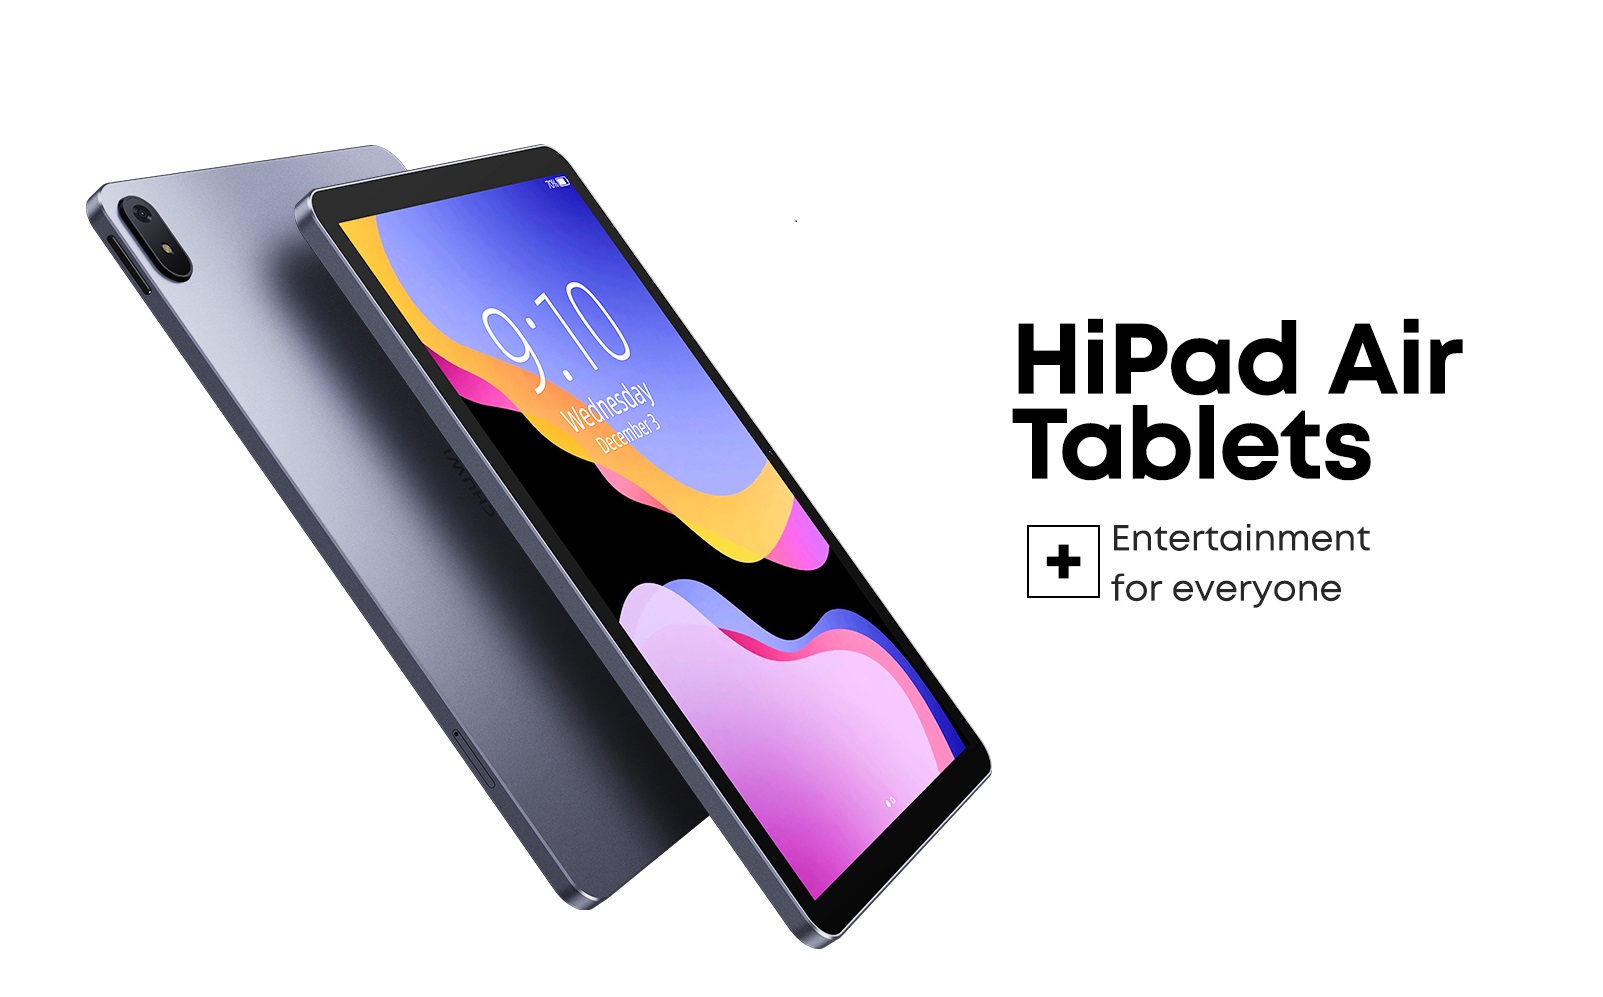 tablet chuwi hipad air - chiếc máy tính bảng mạnh mẽ và đẹp 2